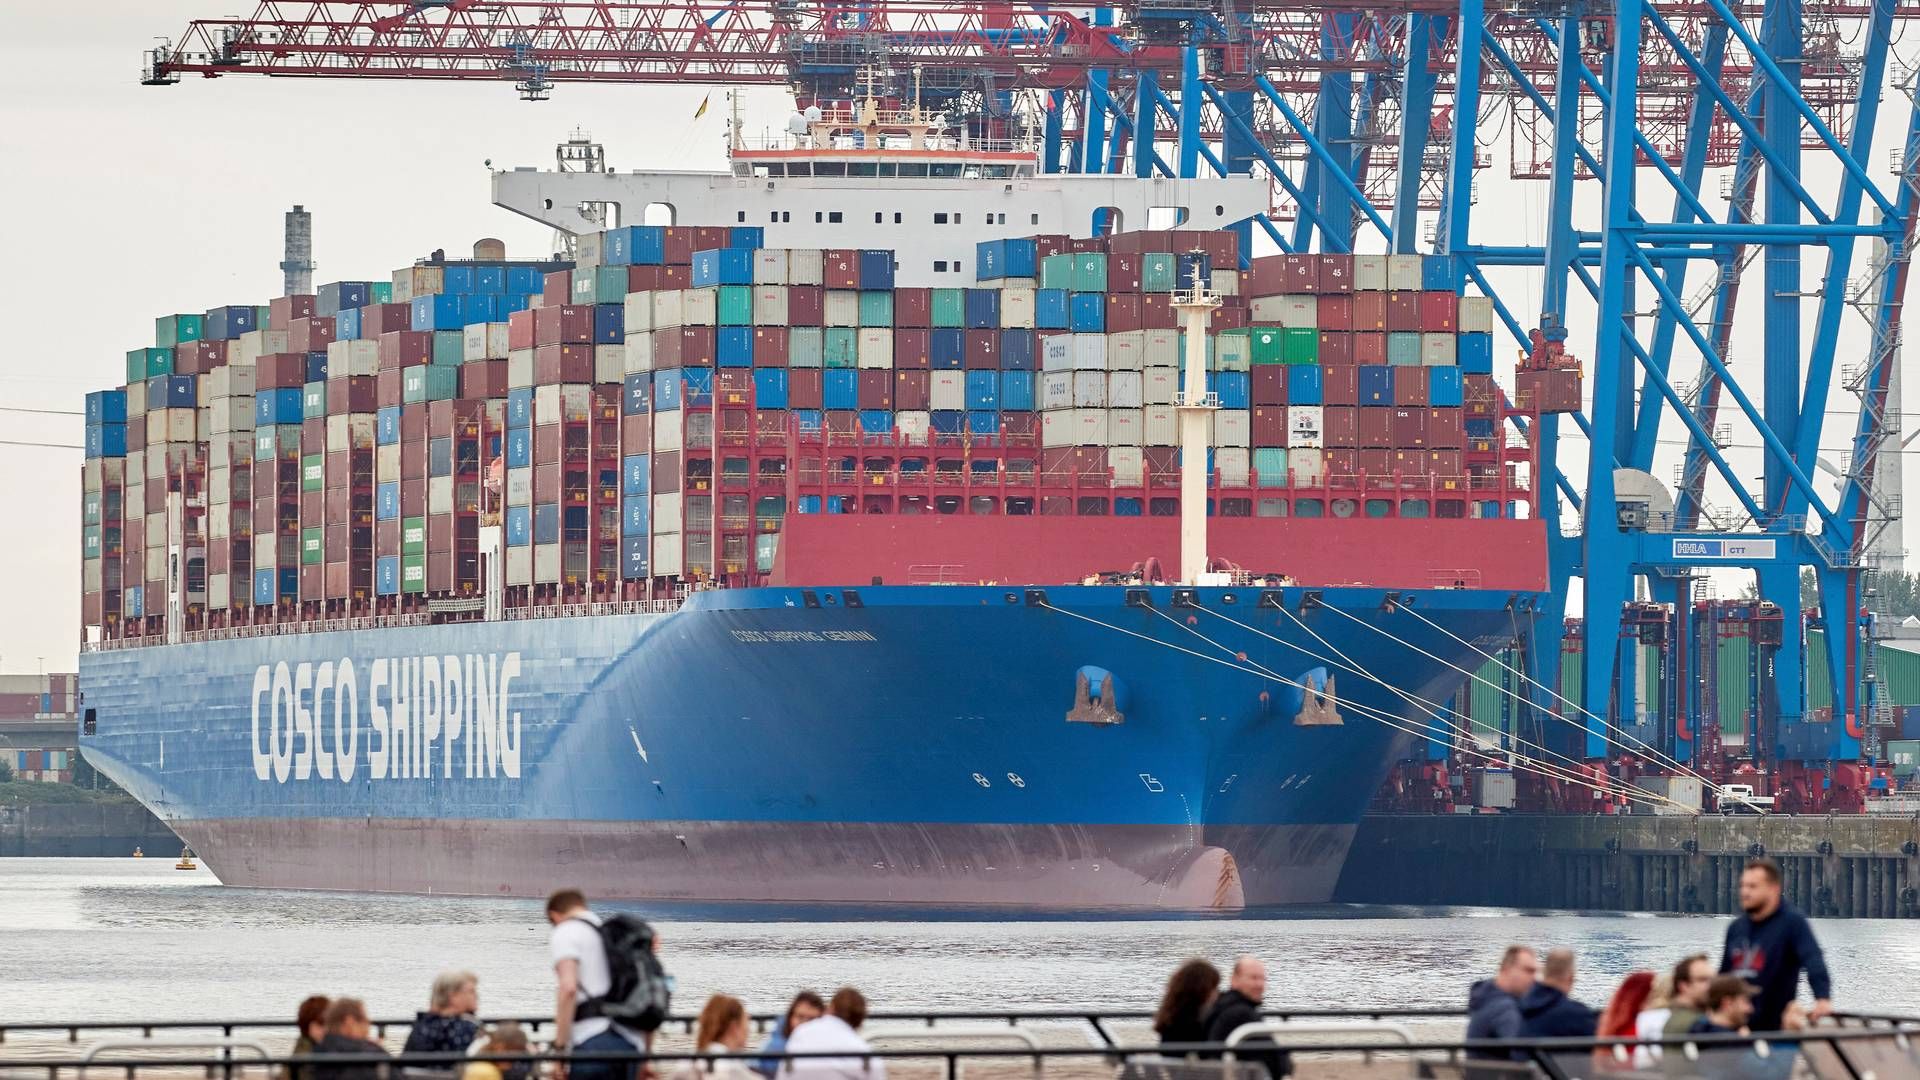 Cosco Shipping Ports' køb i juni af en andel i Tollerort-terminalen i Hamborg er det seneste kinesiske indtog i europæiske havne. | Foto: Georg Wendt/AP/Ritzau Scanpix